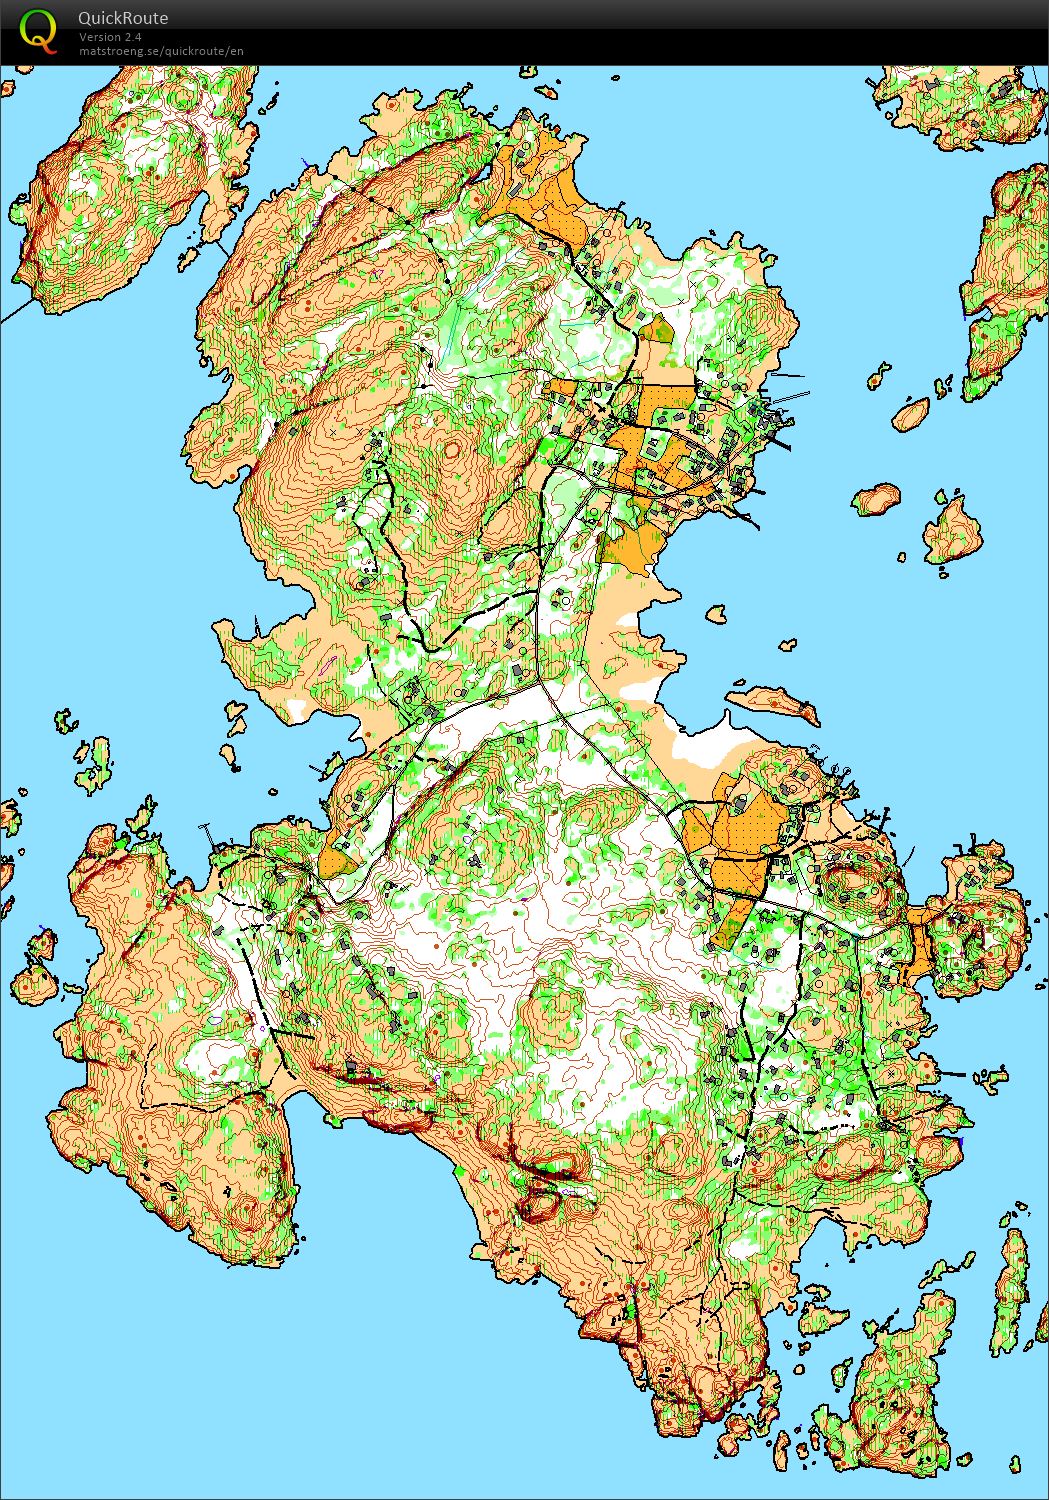 Herføl path survey (05.06.2016)